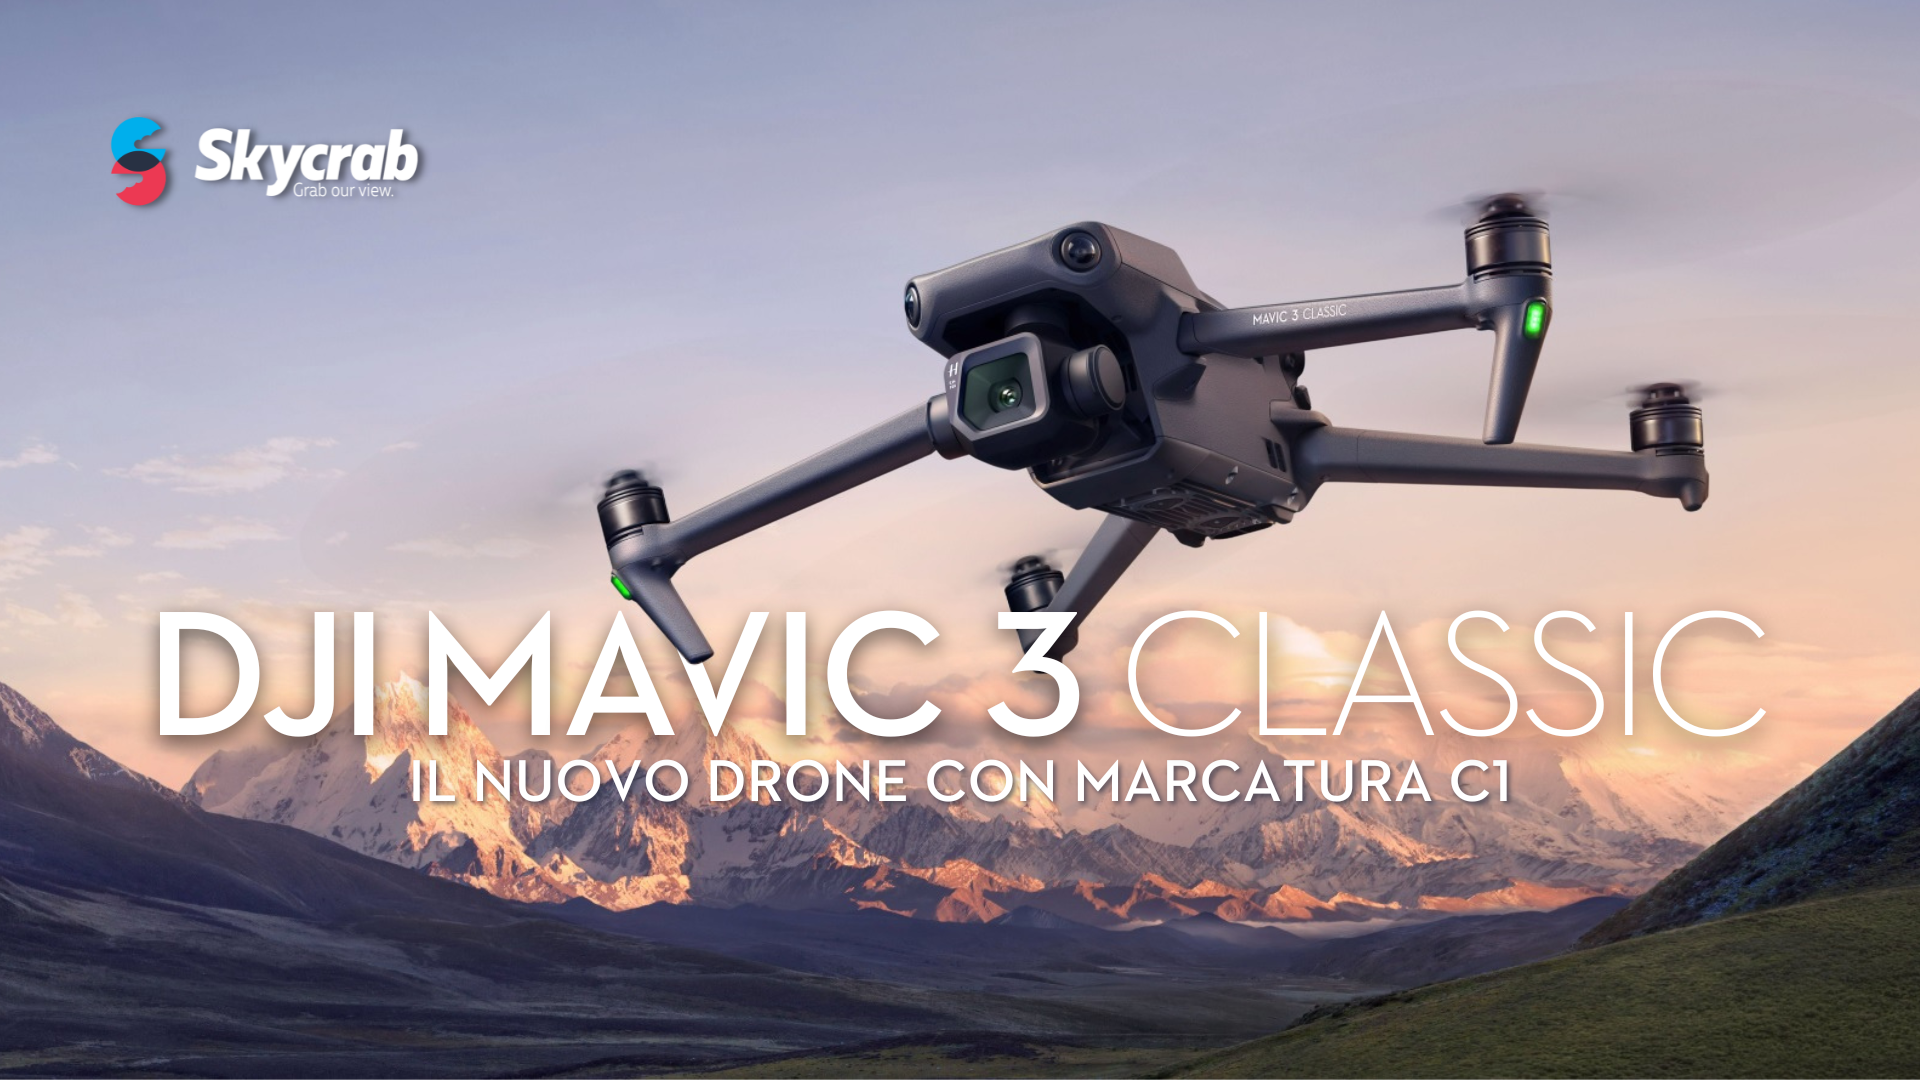 DJI Mavic 3 Classic - Il nuovo drone con Marcatura C1